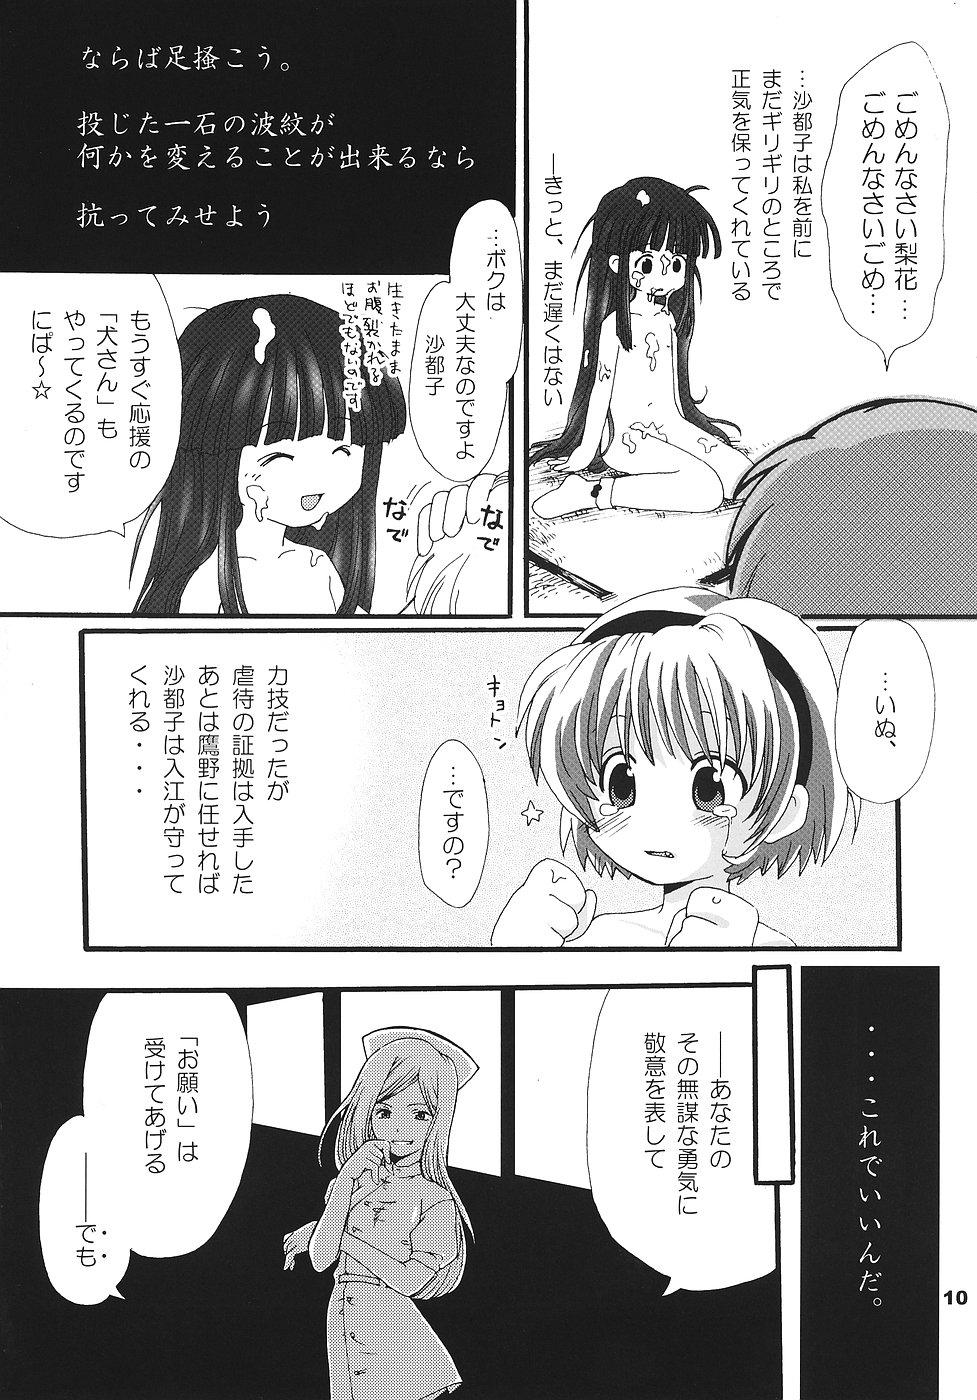 Threeway Higurashi no Koe, Ima wa Tae - Higurashi no naku koro ni Girlfriends - Page 9